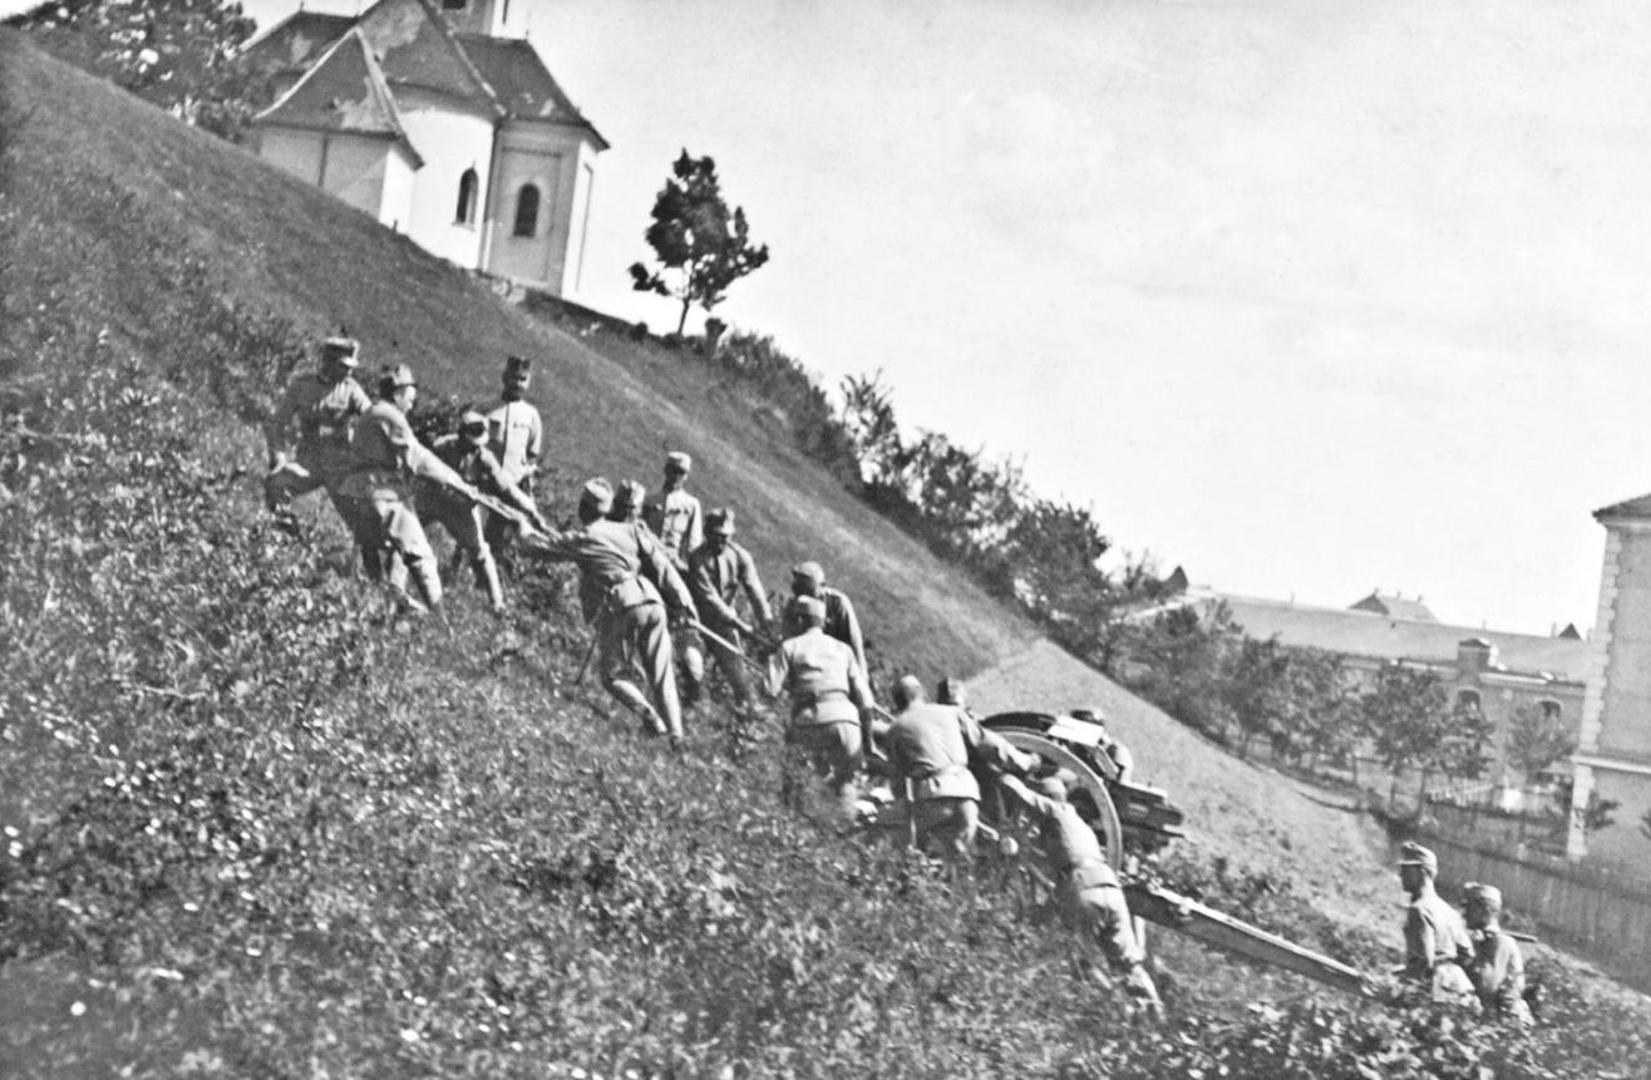 Izvlačenje topa:
austrougarske postrojbe u Srbiji
suočile su se i s izrazito lošim
putevima te je prijevoz ratnog
materijala bio veliki izazov